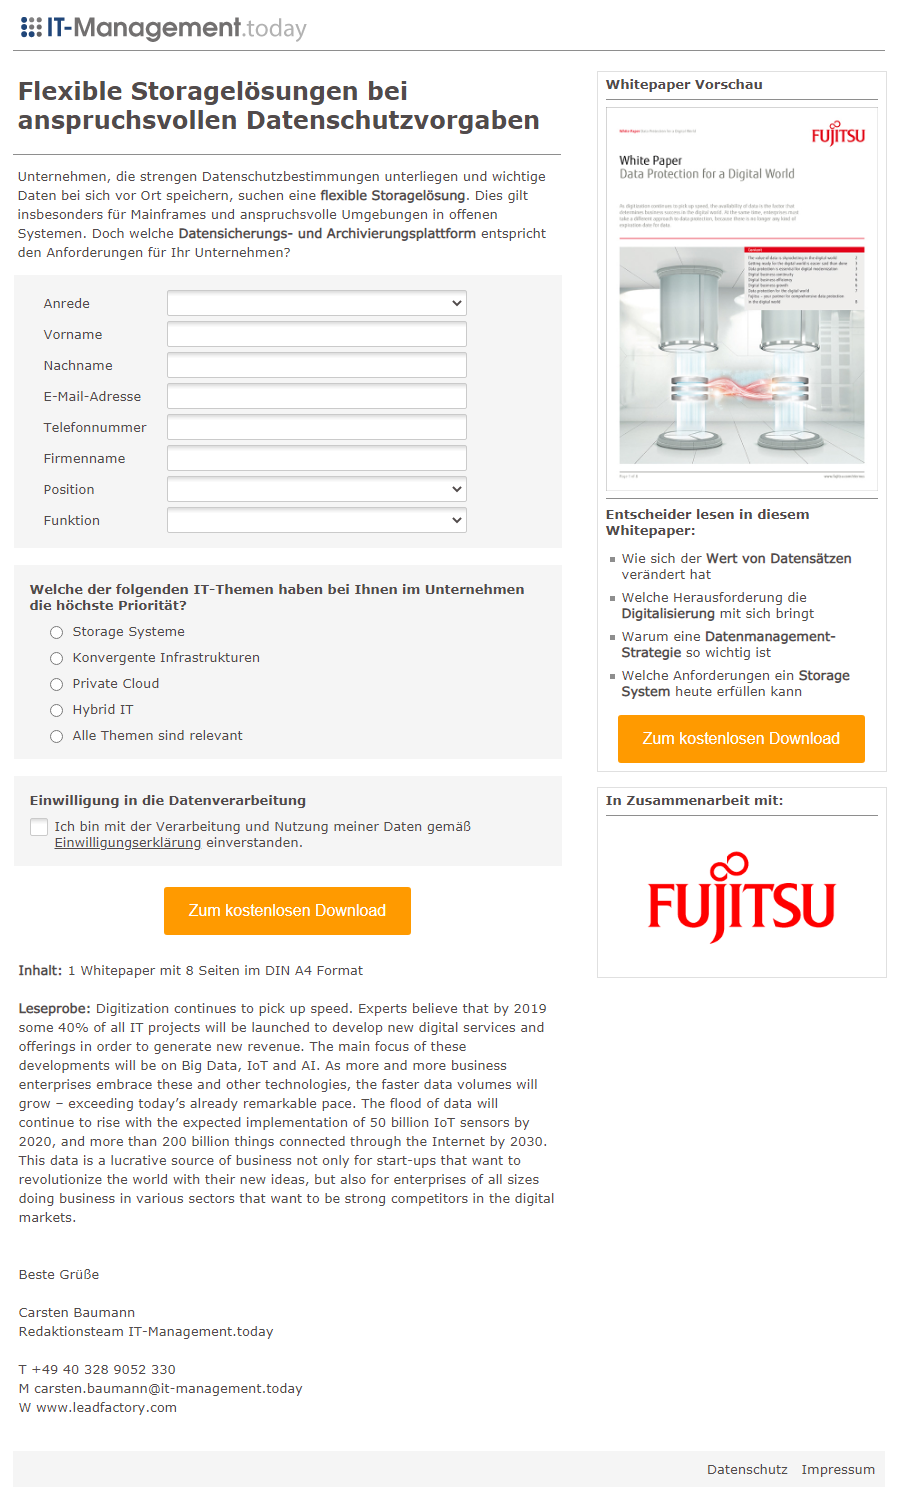 Referenzkampagne_Landingpage_Fujitsu_Flexible Storagelösungen bei anspruchsvollen Datenschutzvorgaben